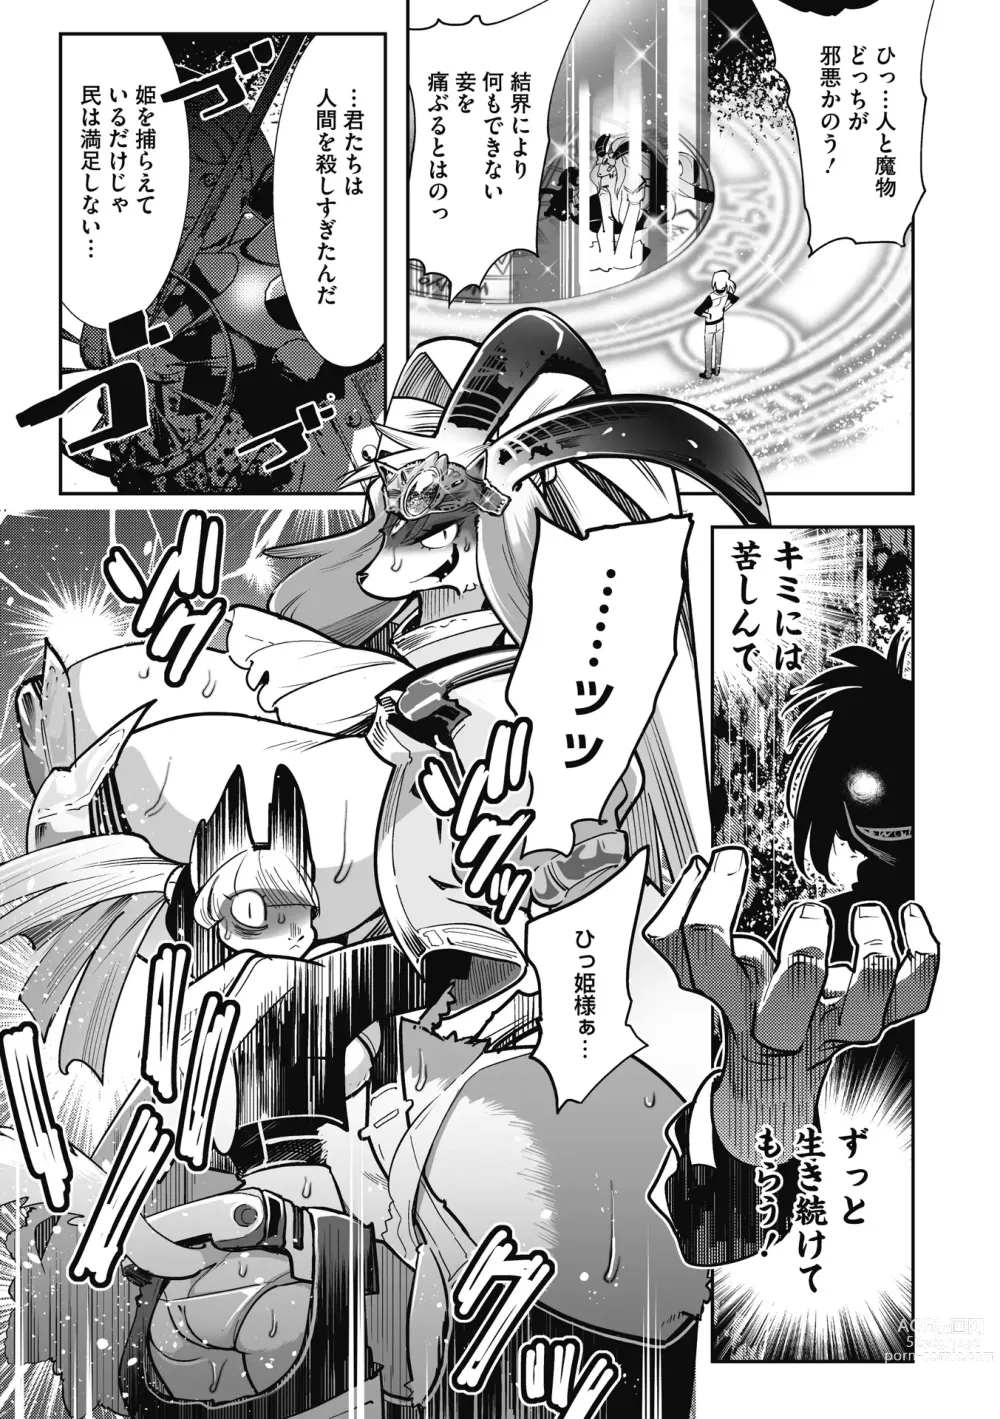 Page 9 of manga Kemono to Koishite Nani ga Warui!